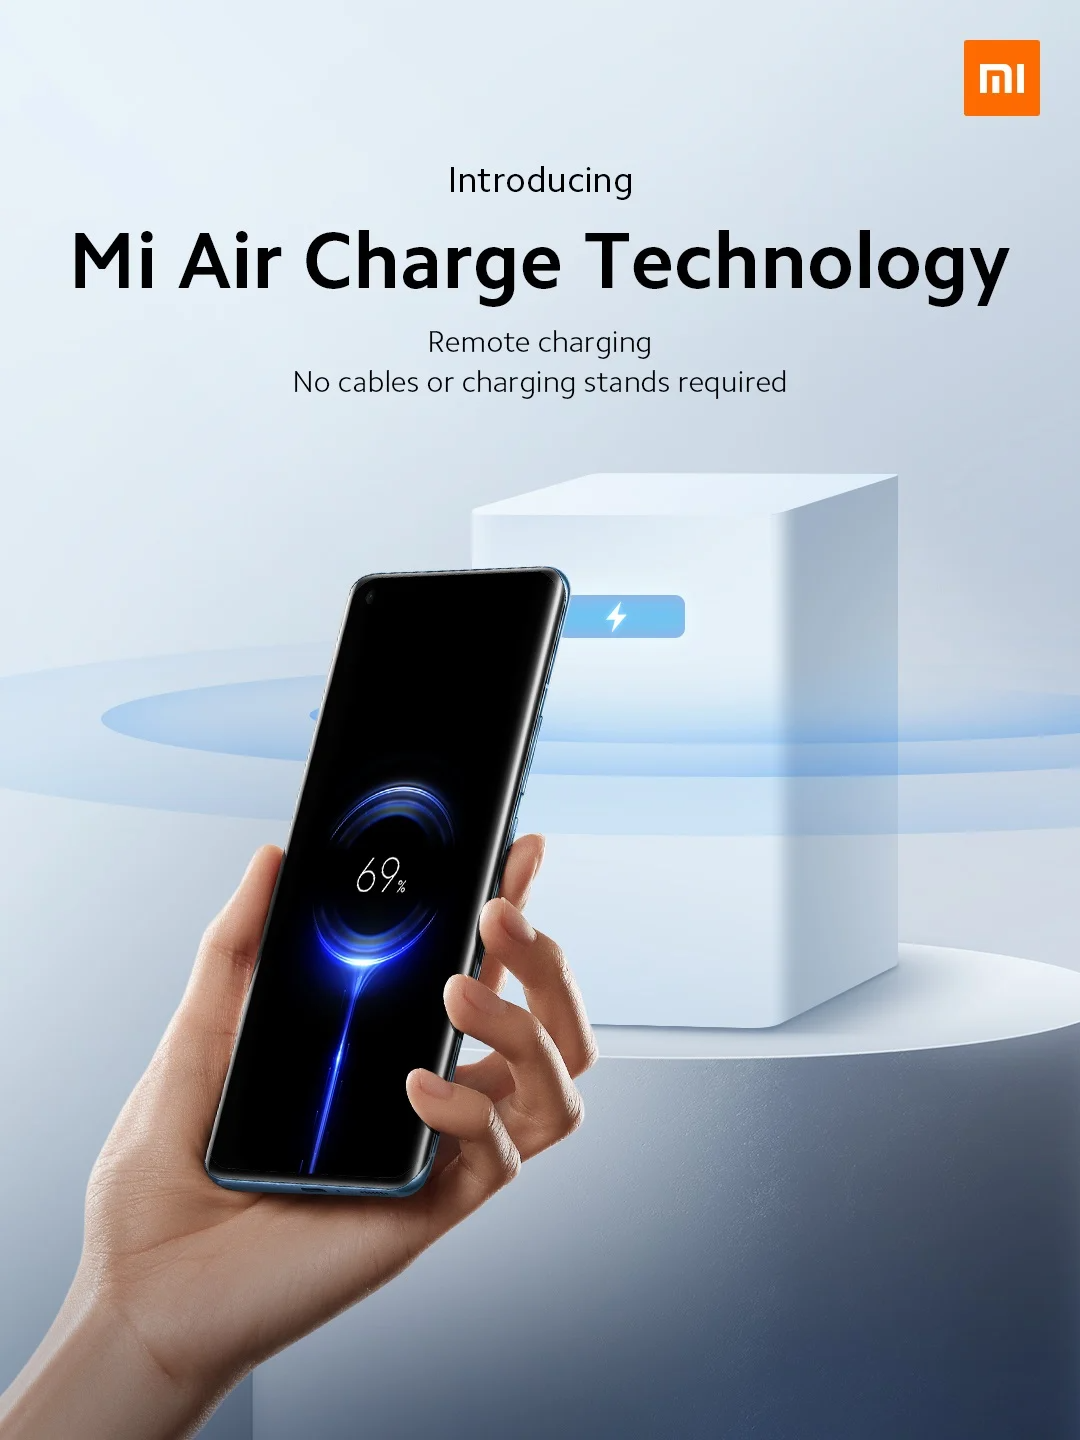 Xiaomi представила беспроводную технологию Mi Air Charge, которая заряжает устройства на расстоянии